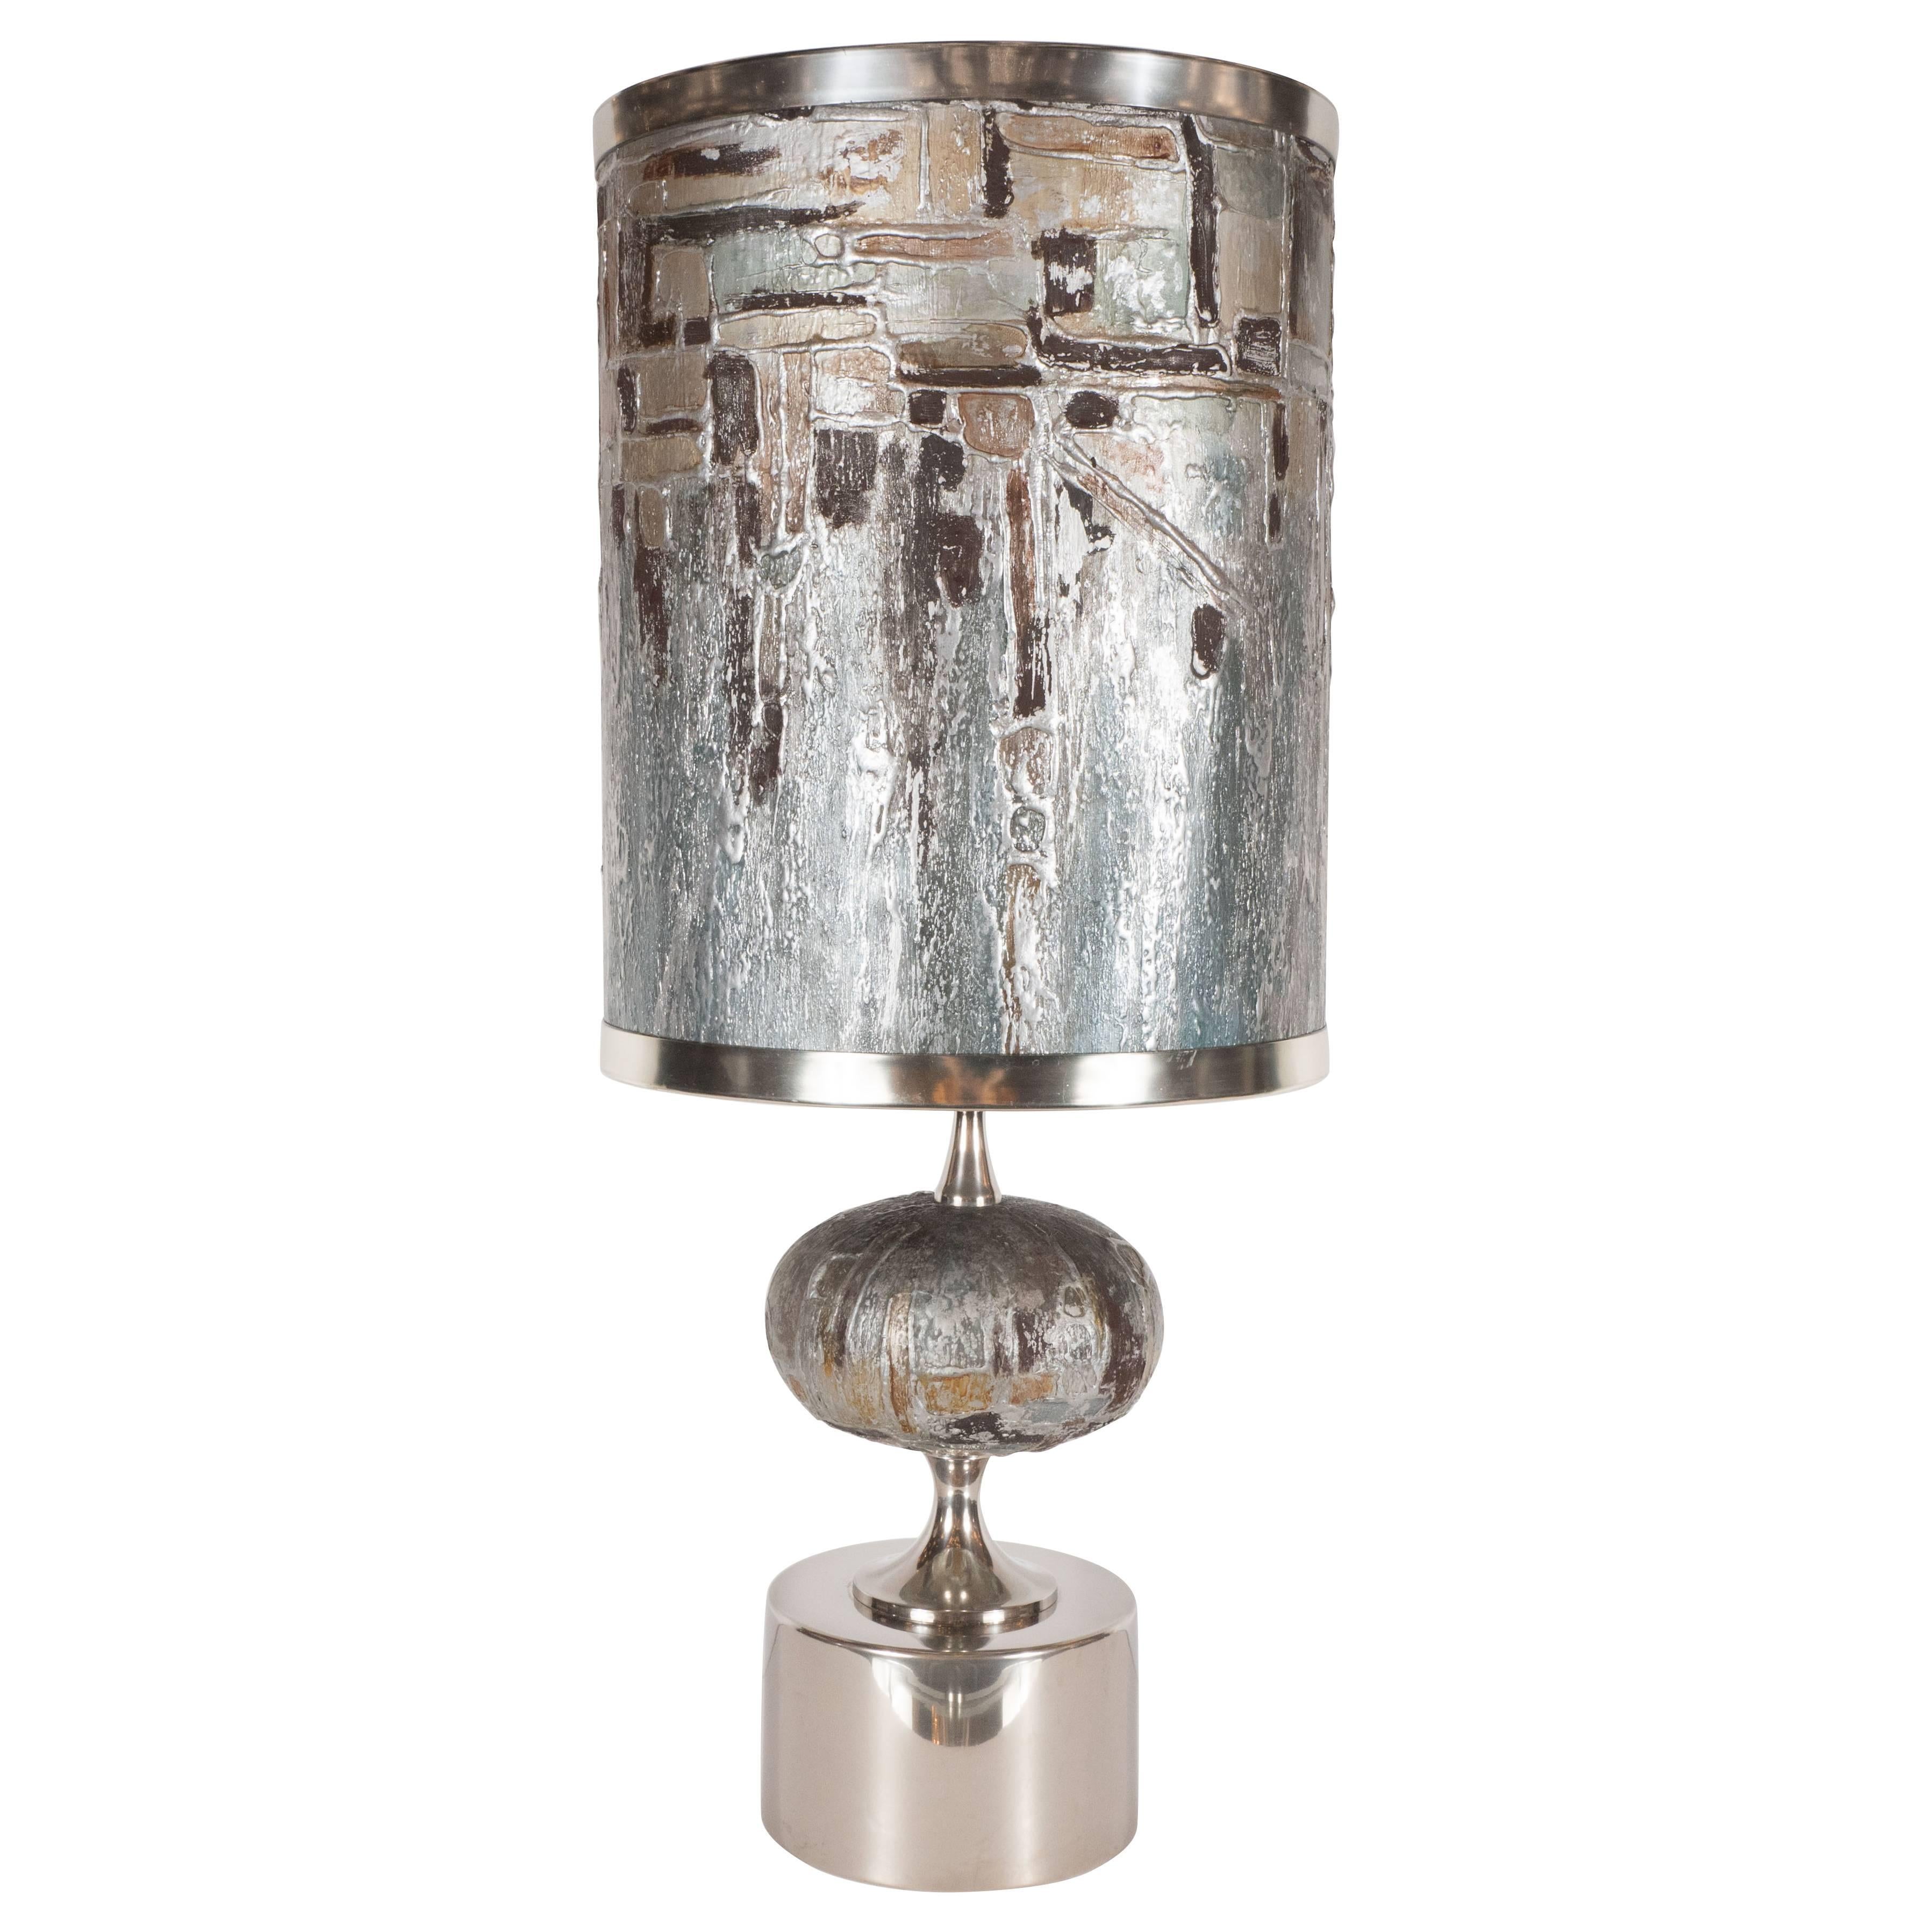 Lampe de table française moderne du milieu du siècle, peinte et fabriquée à la main, avec raccords en nickel